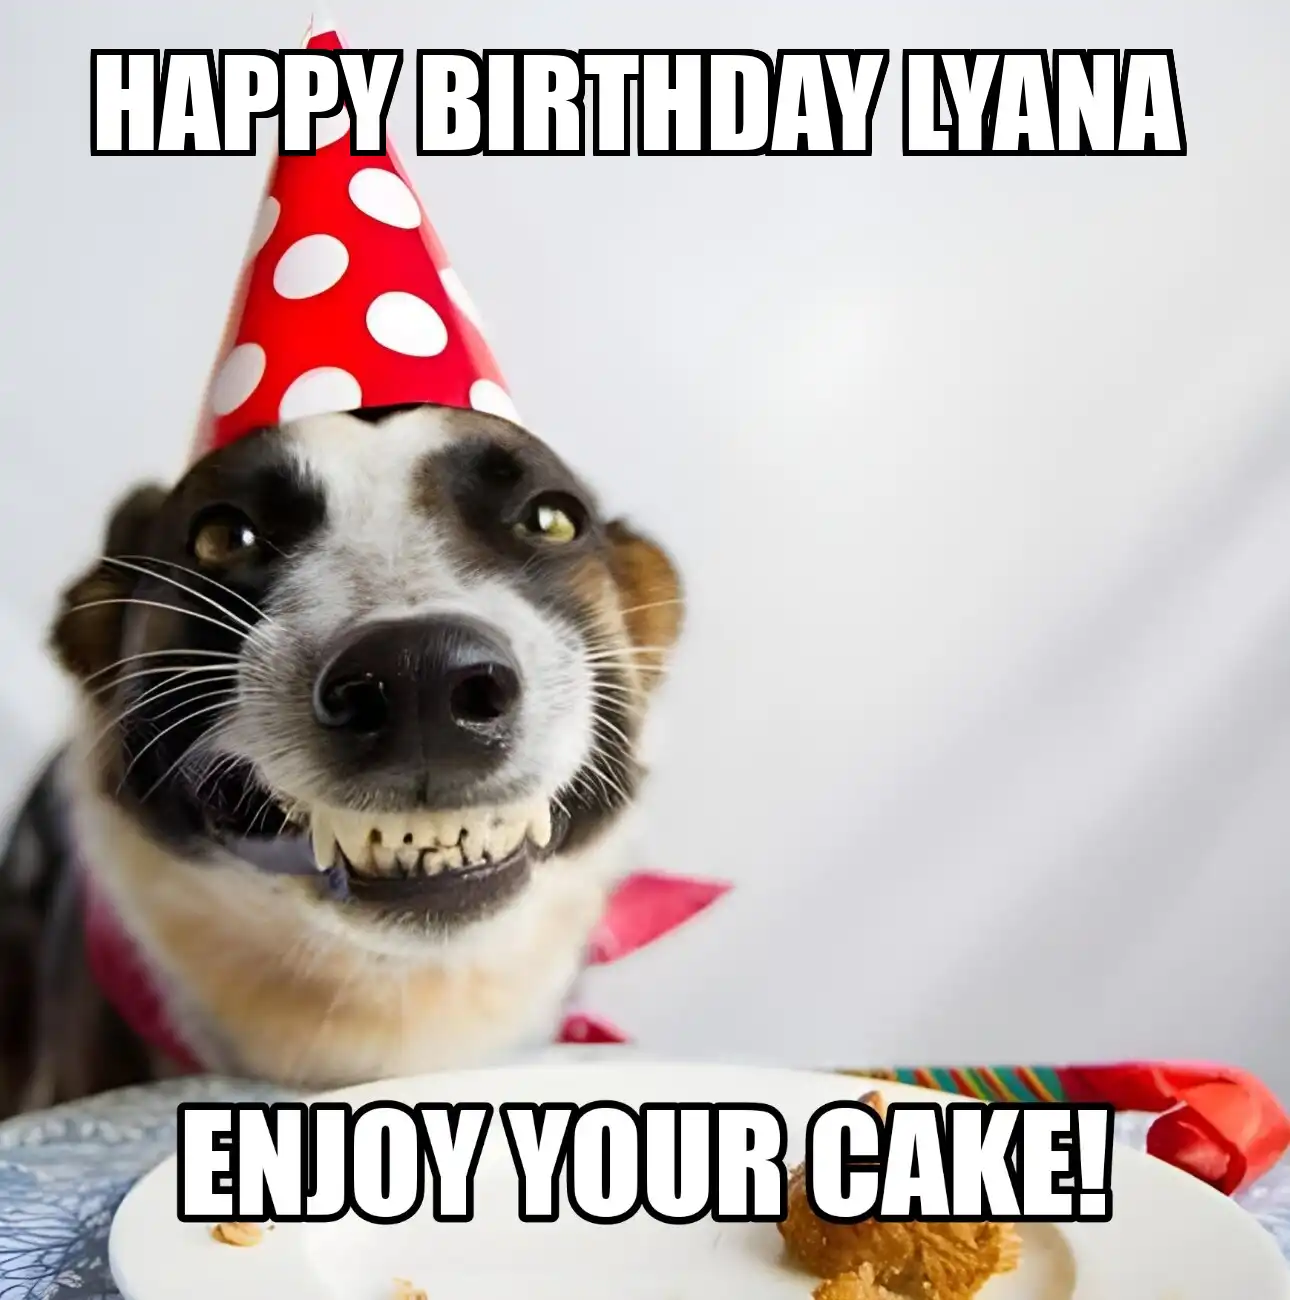 Happy Birthday Lyana Enjoy Your Cake Dog Meme